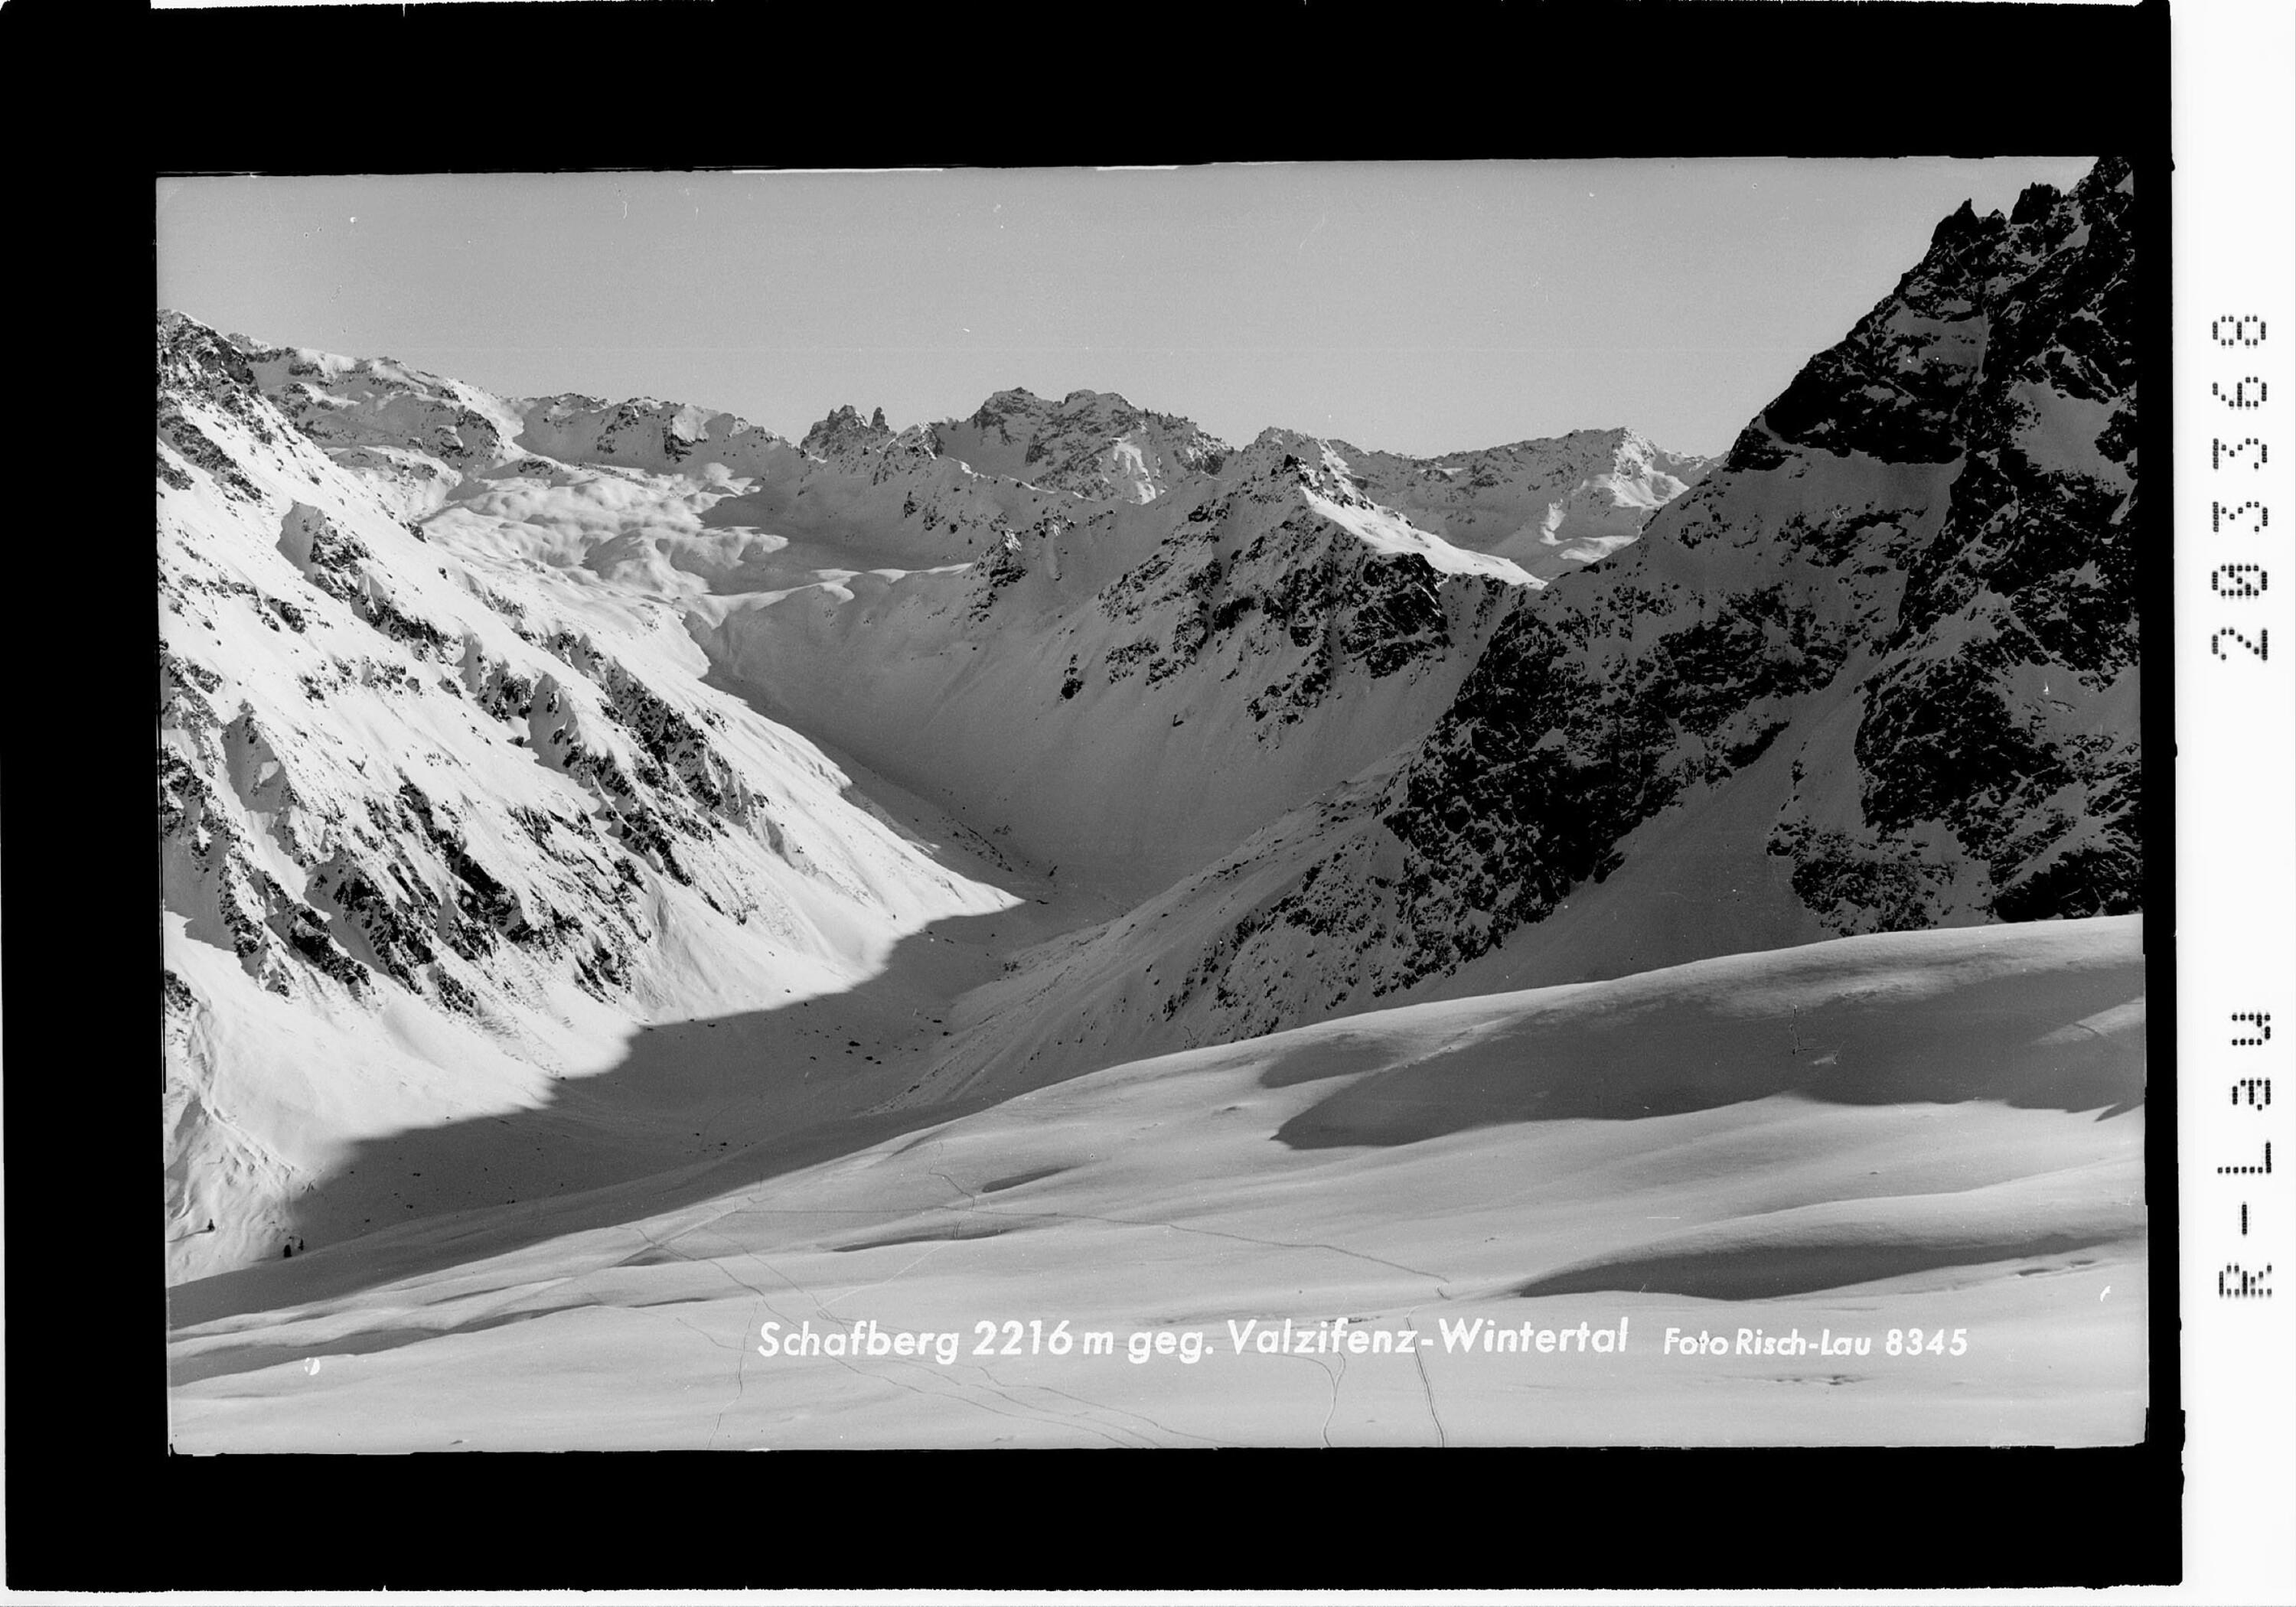 Schafberg 2216 m gegen Valzifenz - Wintertal></div>


    <hr>
    <div class=